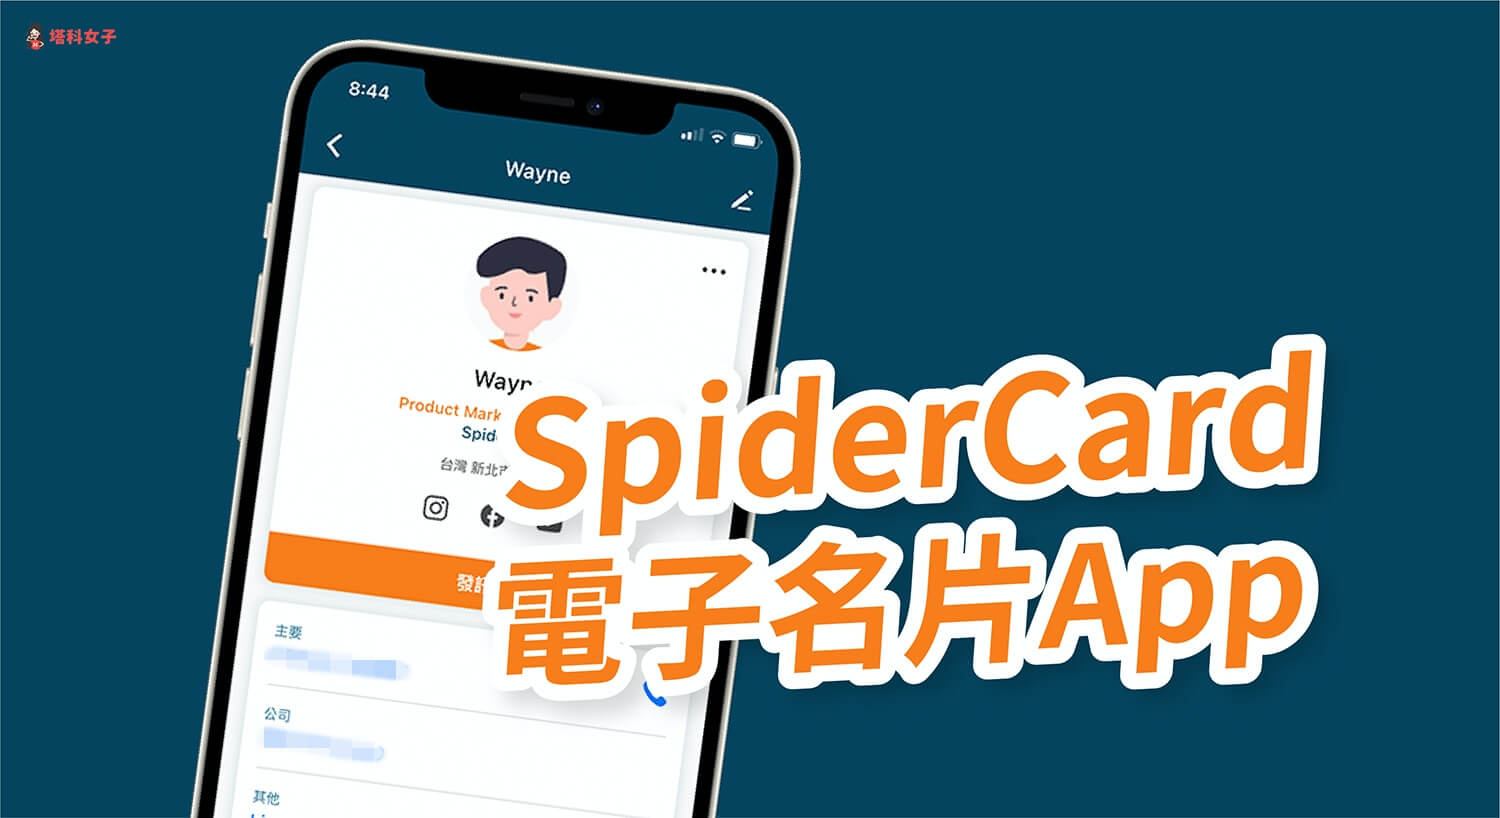 SpiderCard 電子名片 App 讓你建立並收藏電子名片，無國界拓展業務與人脈！